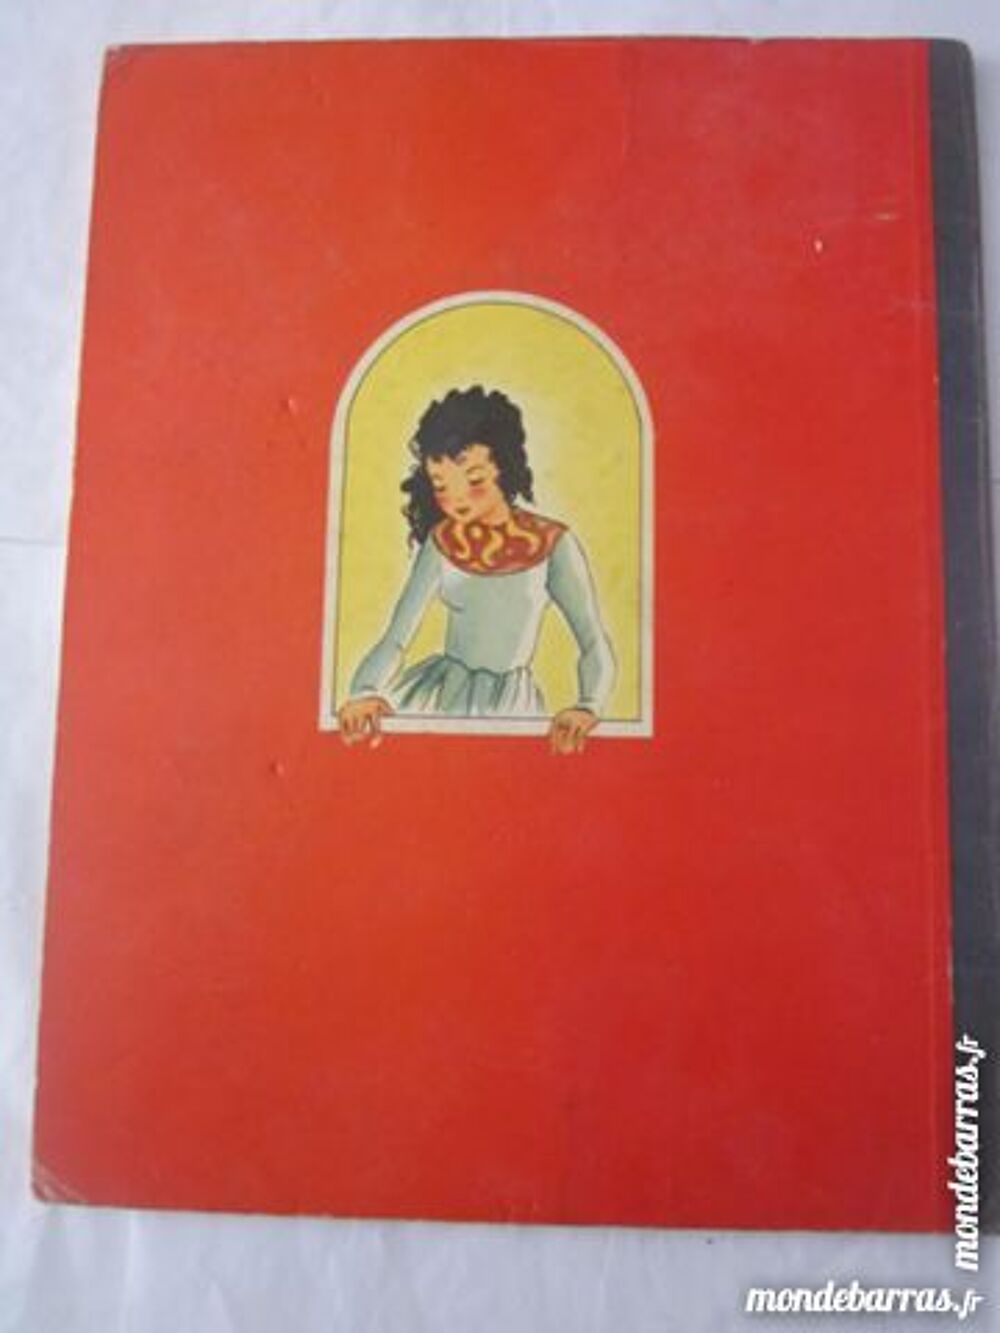 BLANCHE NEIGE 1951 livre d'enfant Livres et BD